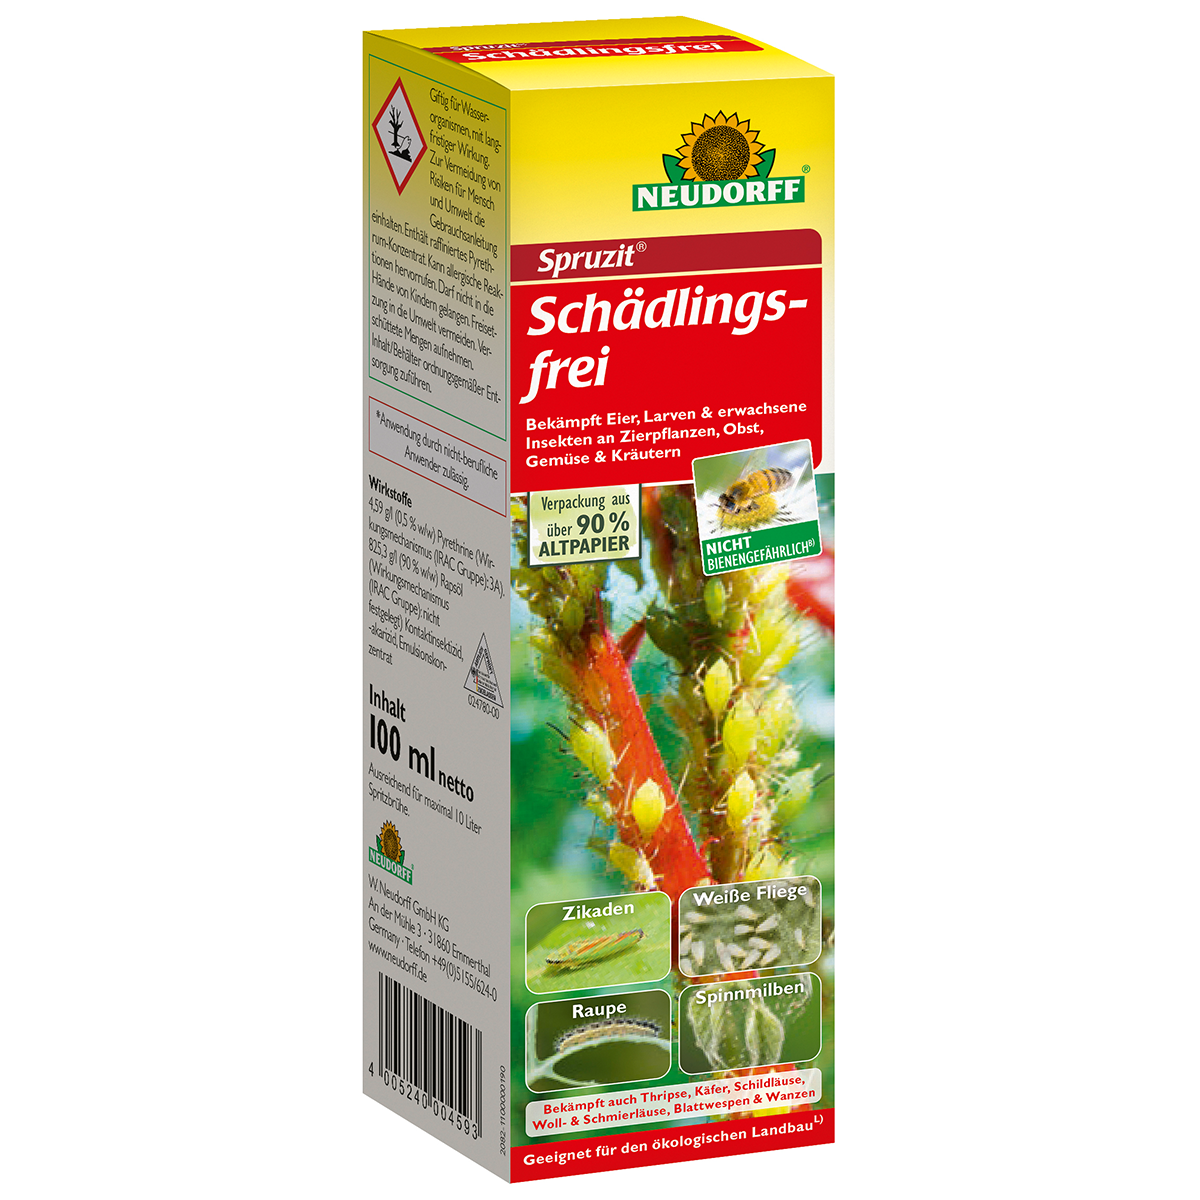 Neudorff Spruzit Schädlingsfrei, 100 ml